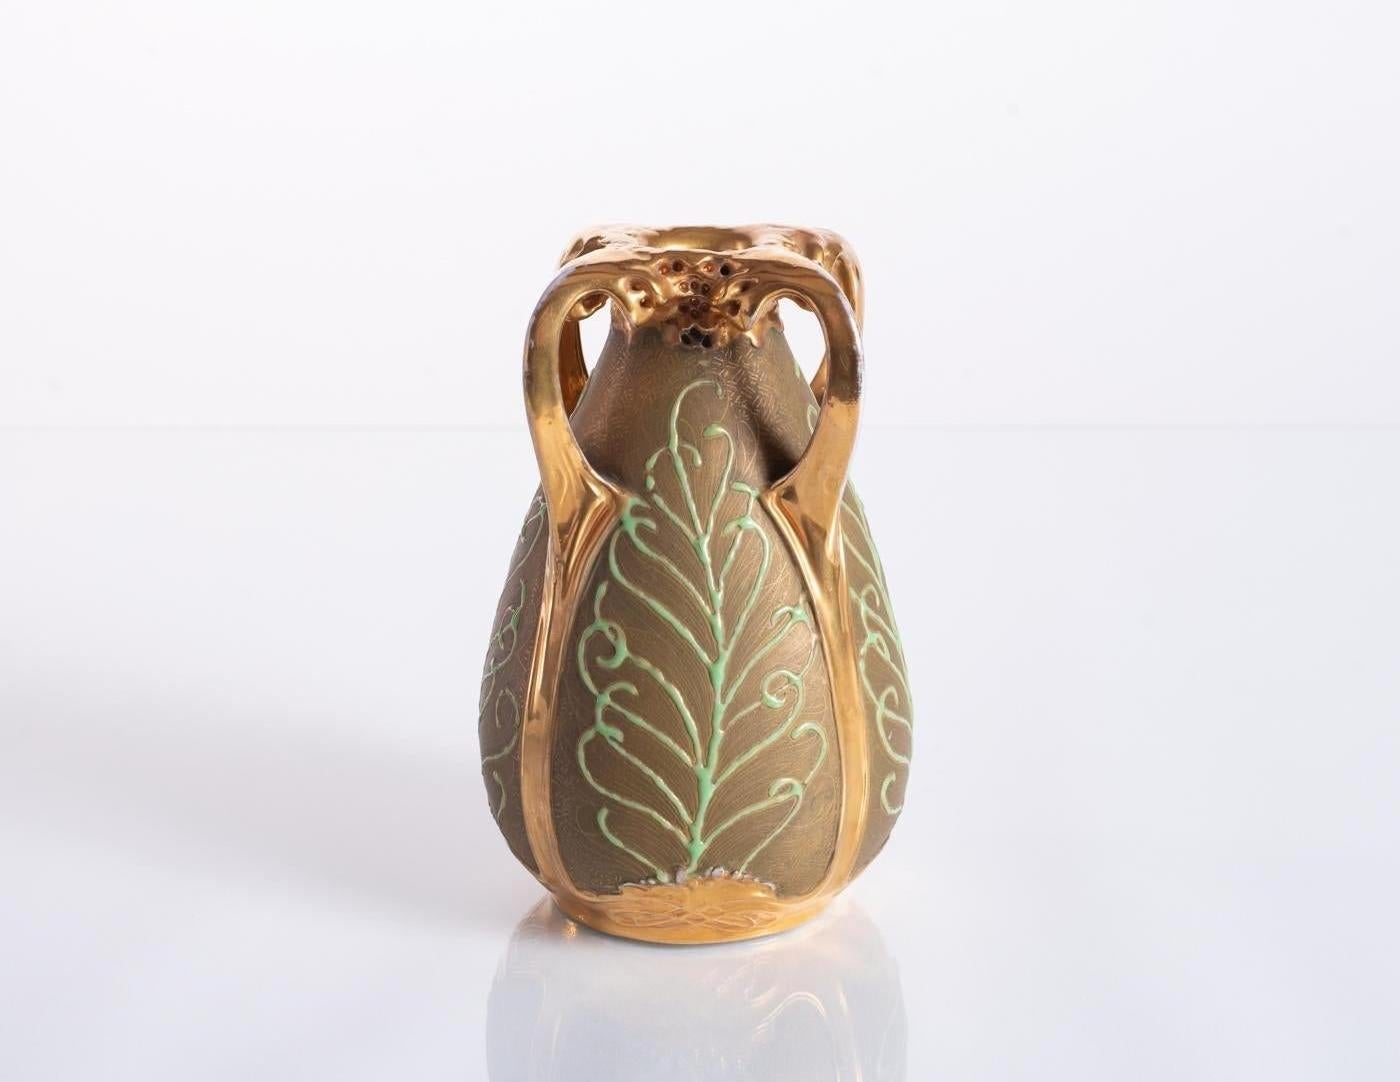 Keramikvase, entworfen von Paul Dachsel für Amphora, mit zarten goldenen Kreuzschraffuren und Reliefelementen, die an Pfauenfedern erinnern. Polierte Goldglasur um die Öffnung, an den Griffen und am Bodenrelief. Ein Paul Dachsel zugeschriebener